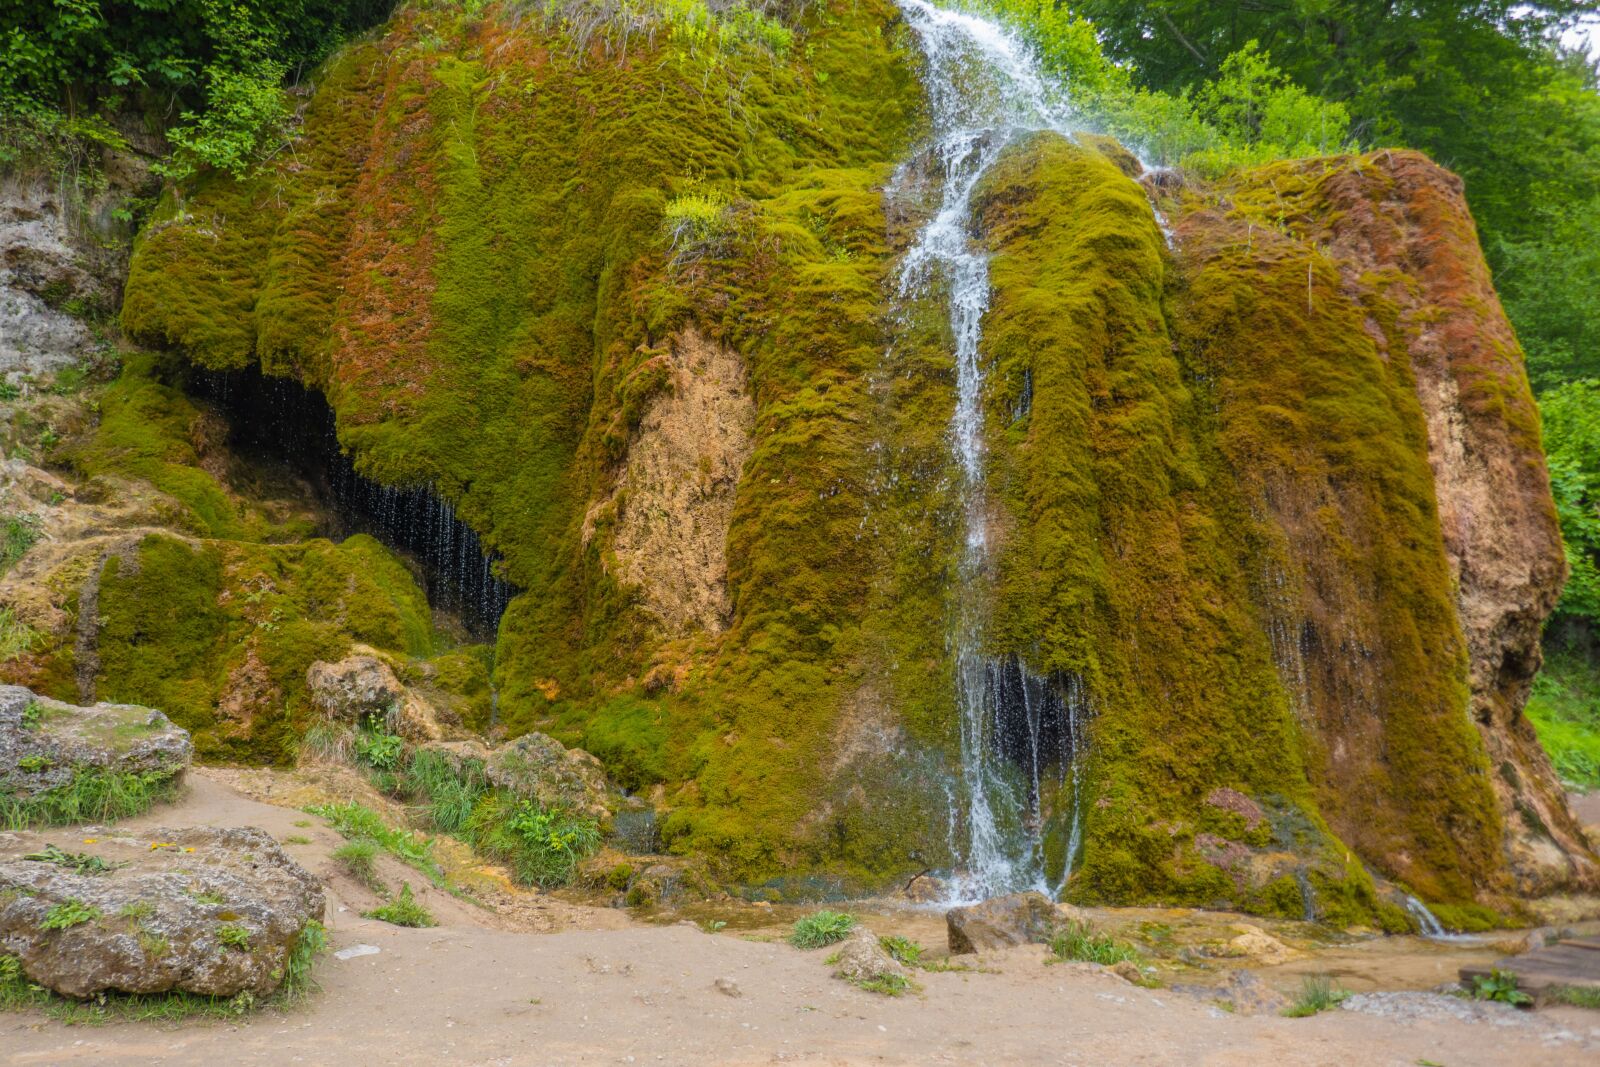 Panasonic DMC-TZ101 sample photo. Waterfall, moss, landscape photography